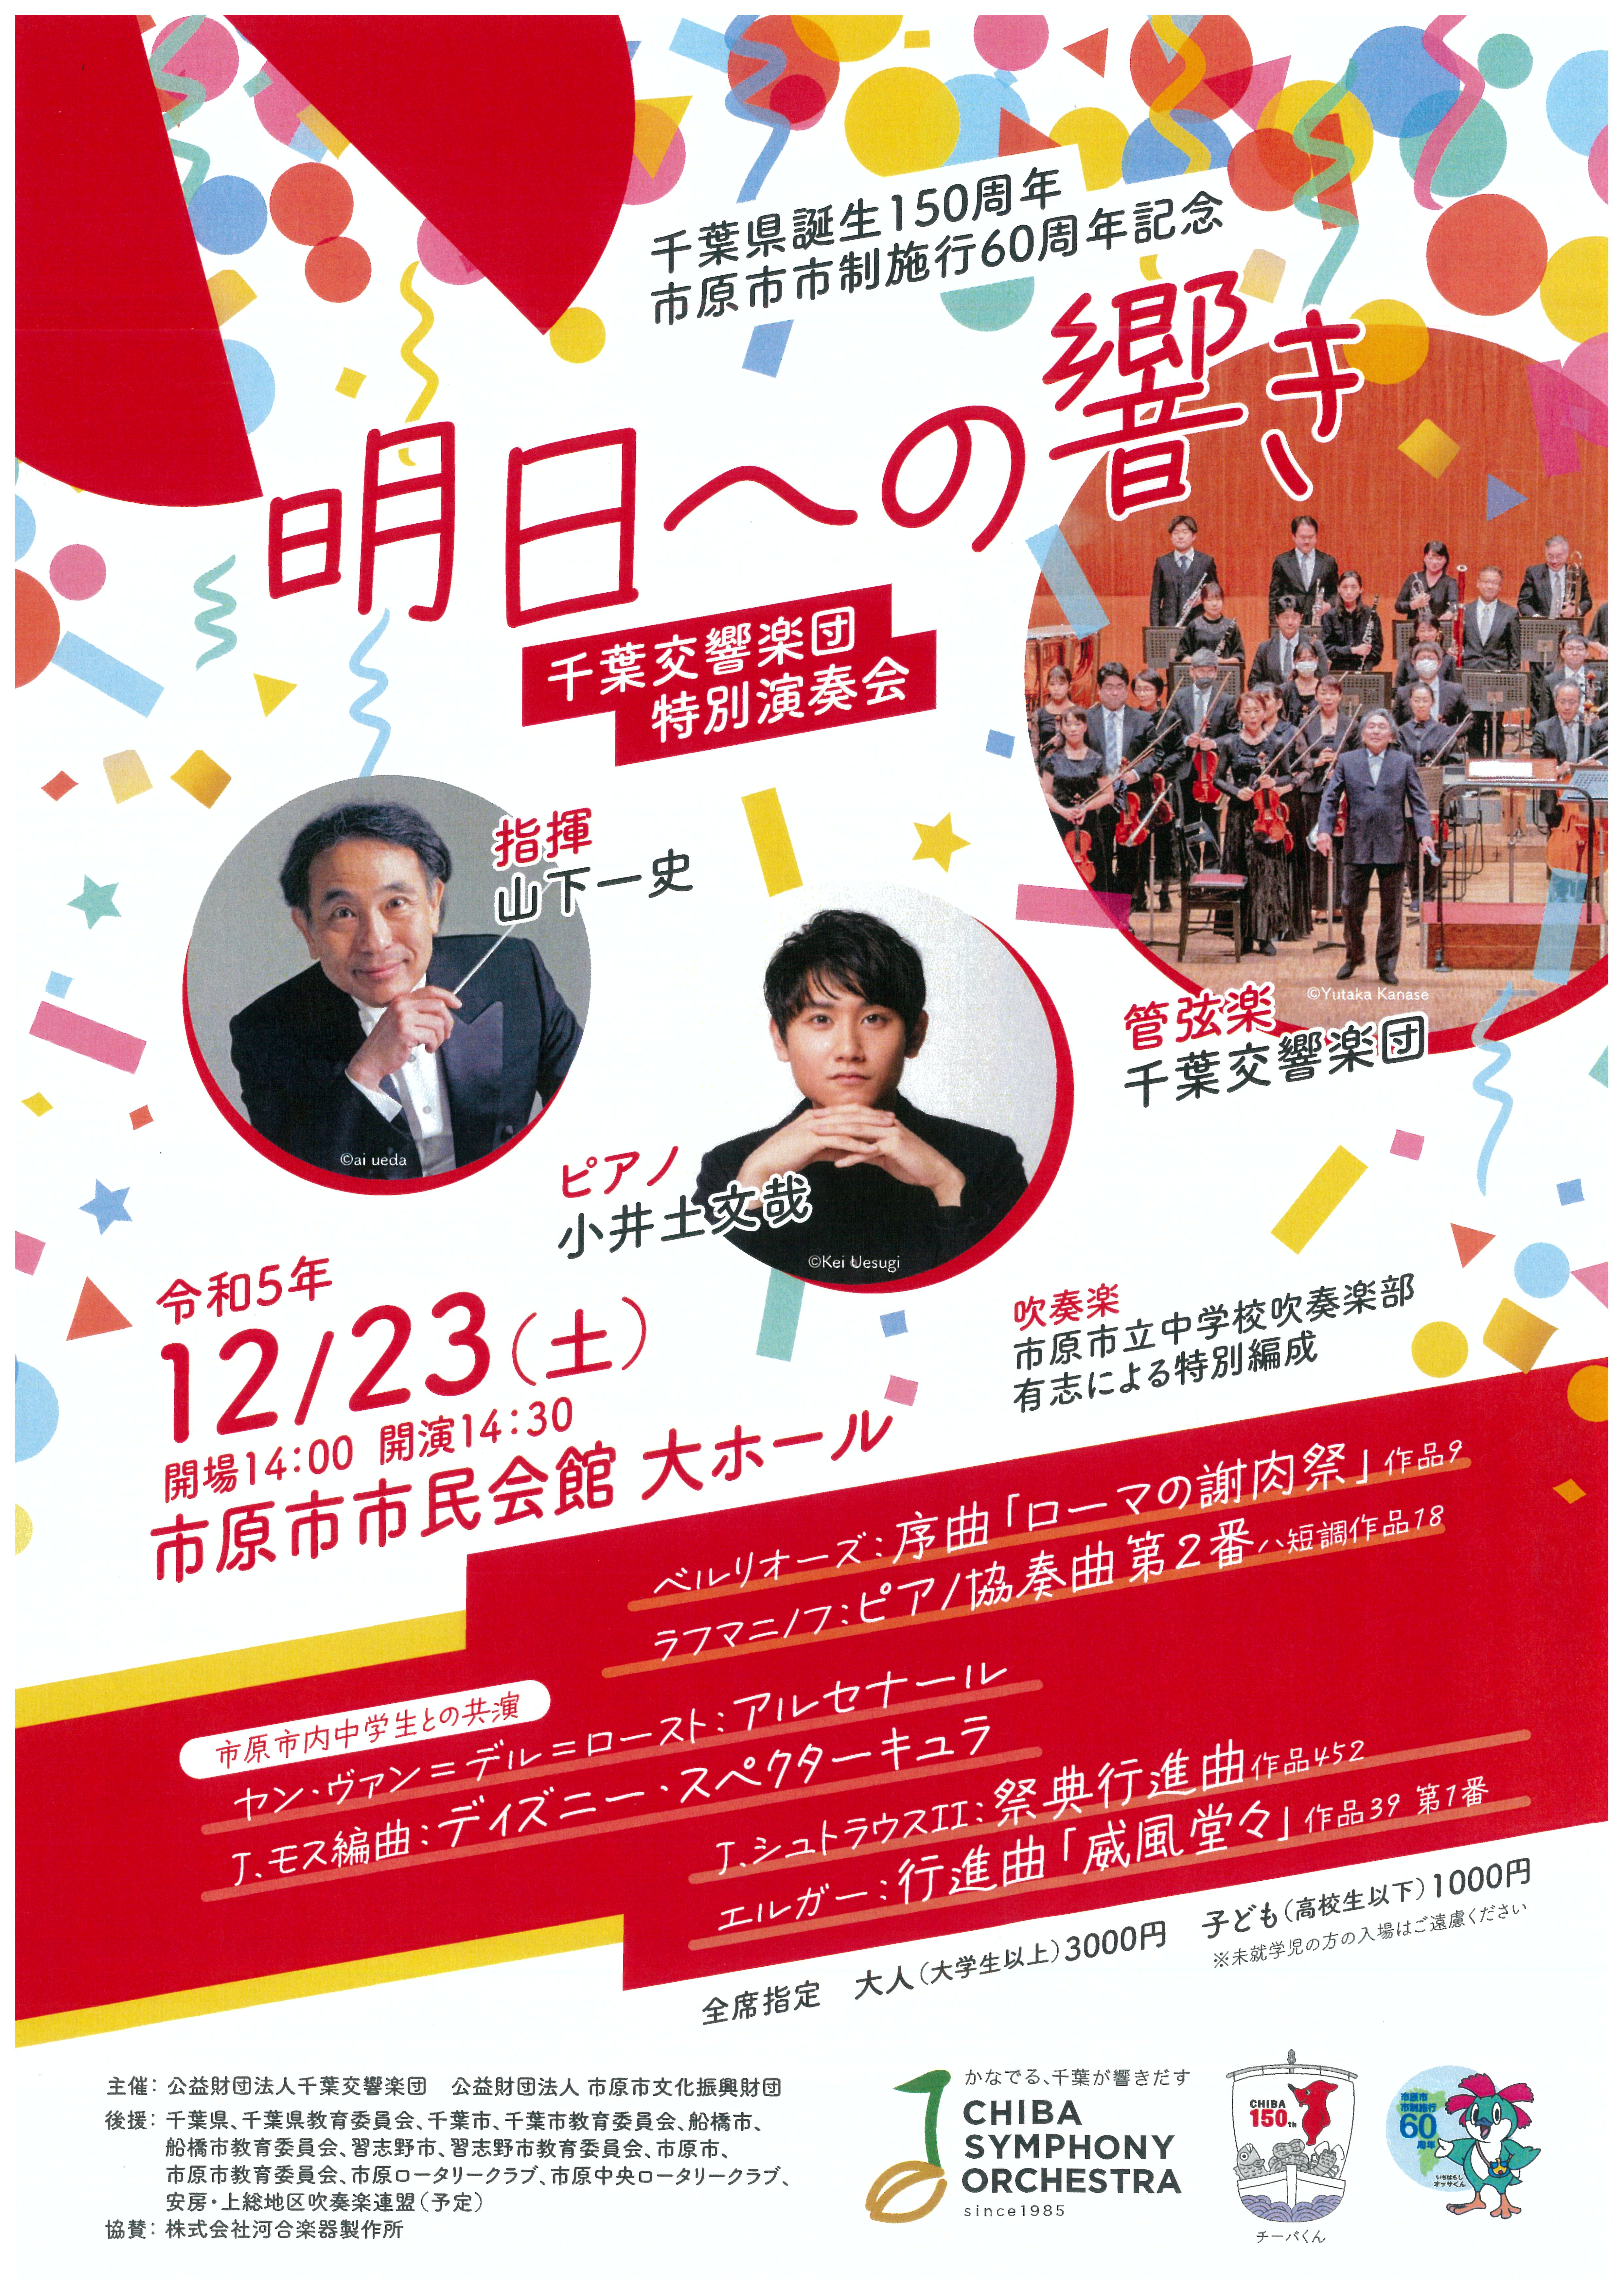 千葉県誕生150周年 市原市市制施行60周年記念 千葉交響楽団特別演奏会「明日への響き」